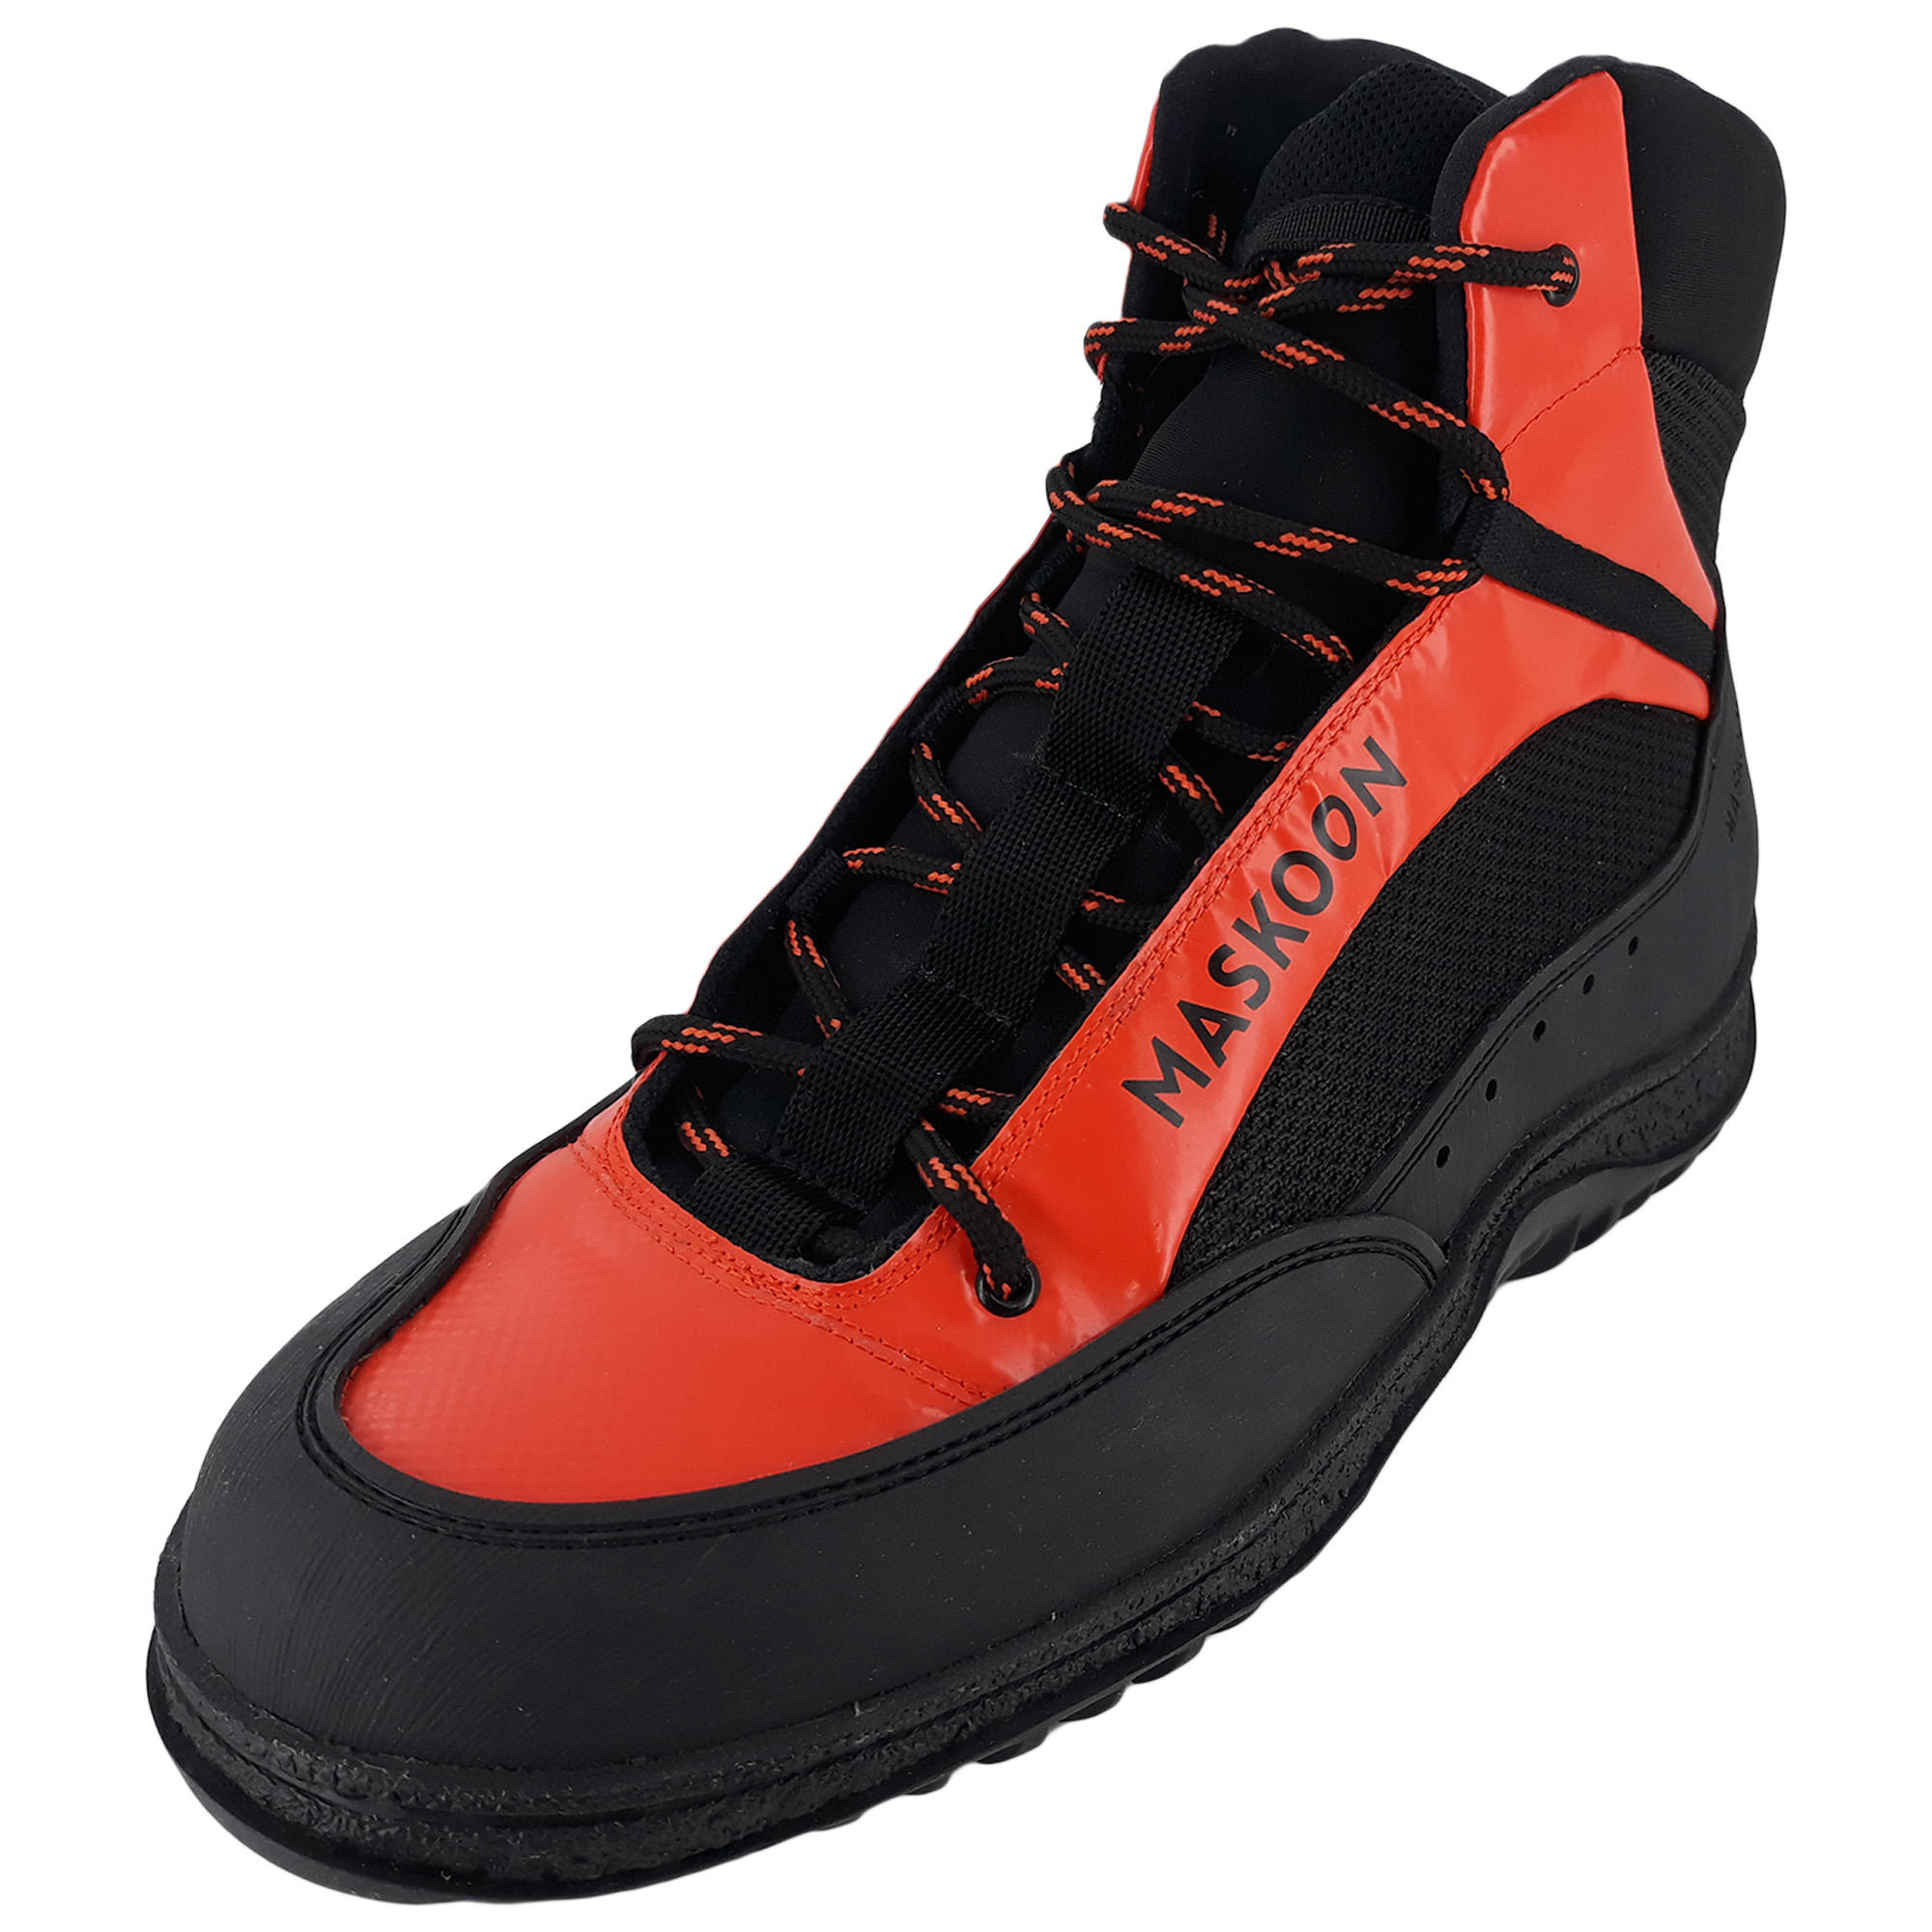 SIMOND Canyoning Shoes SHO 500 V2